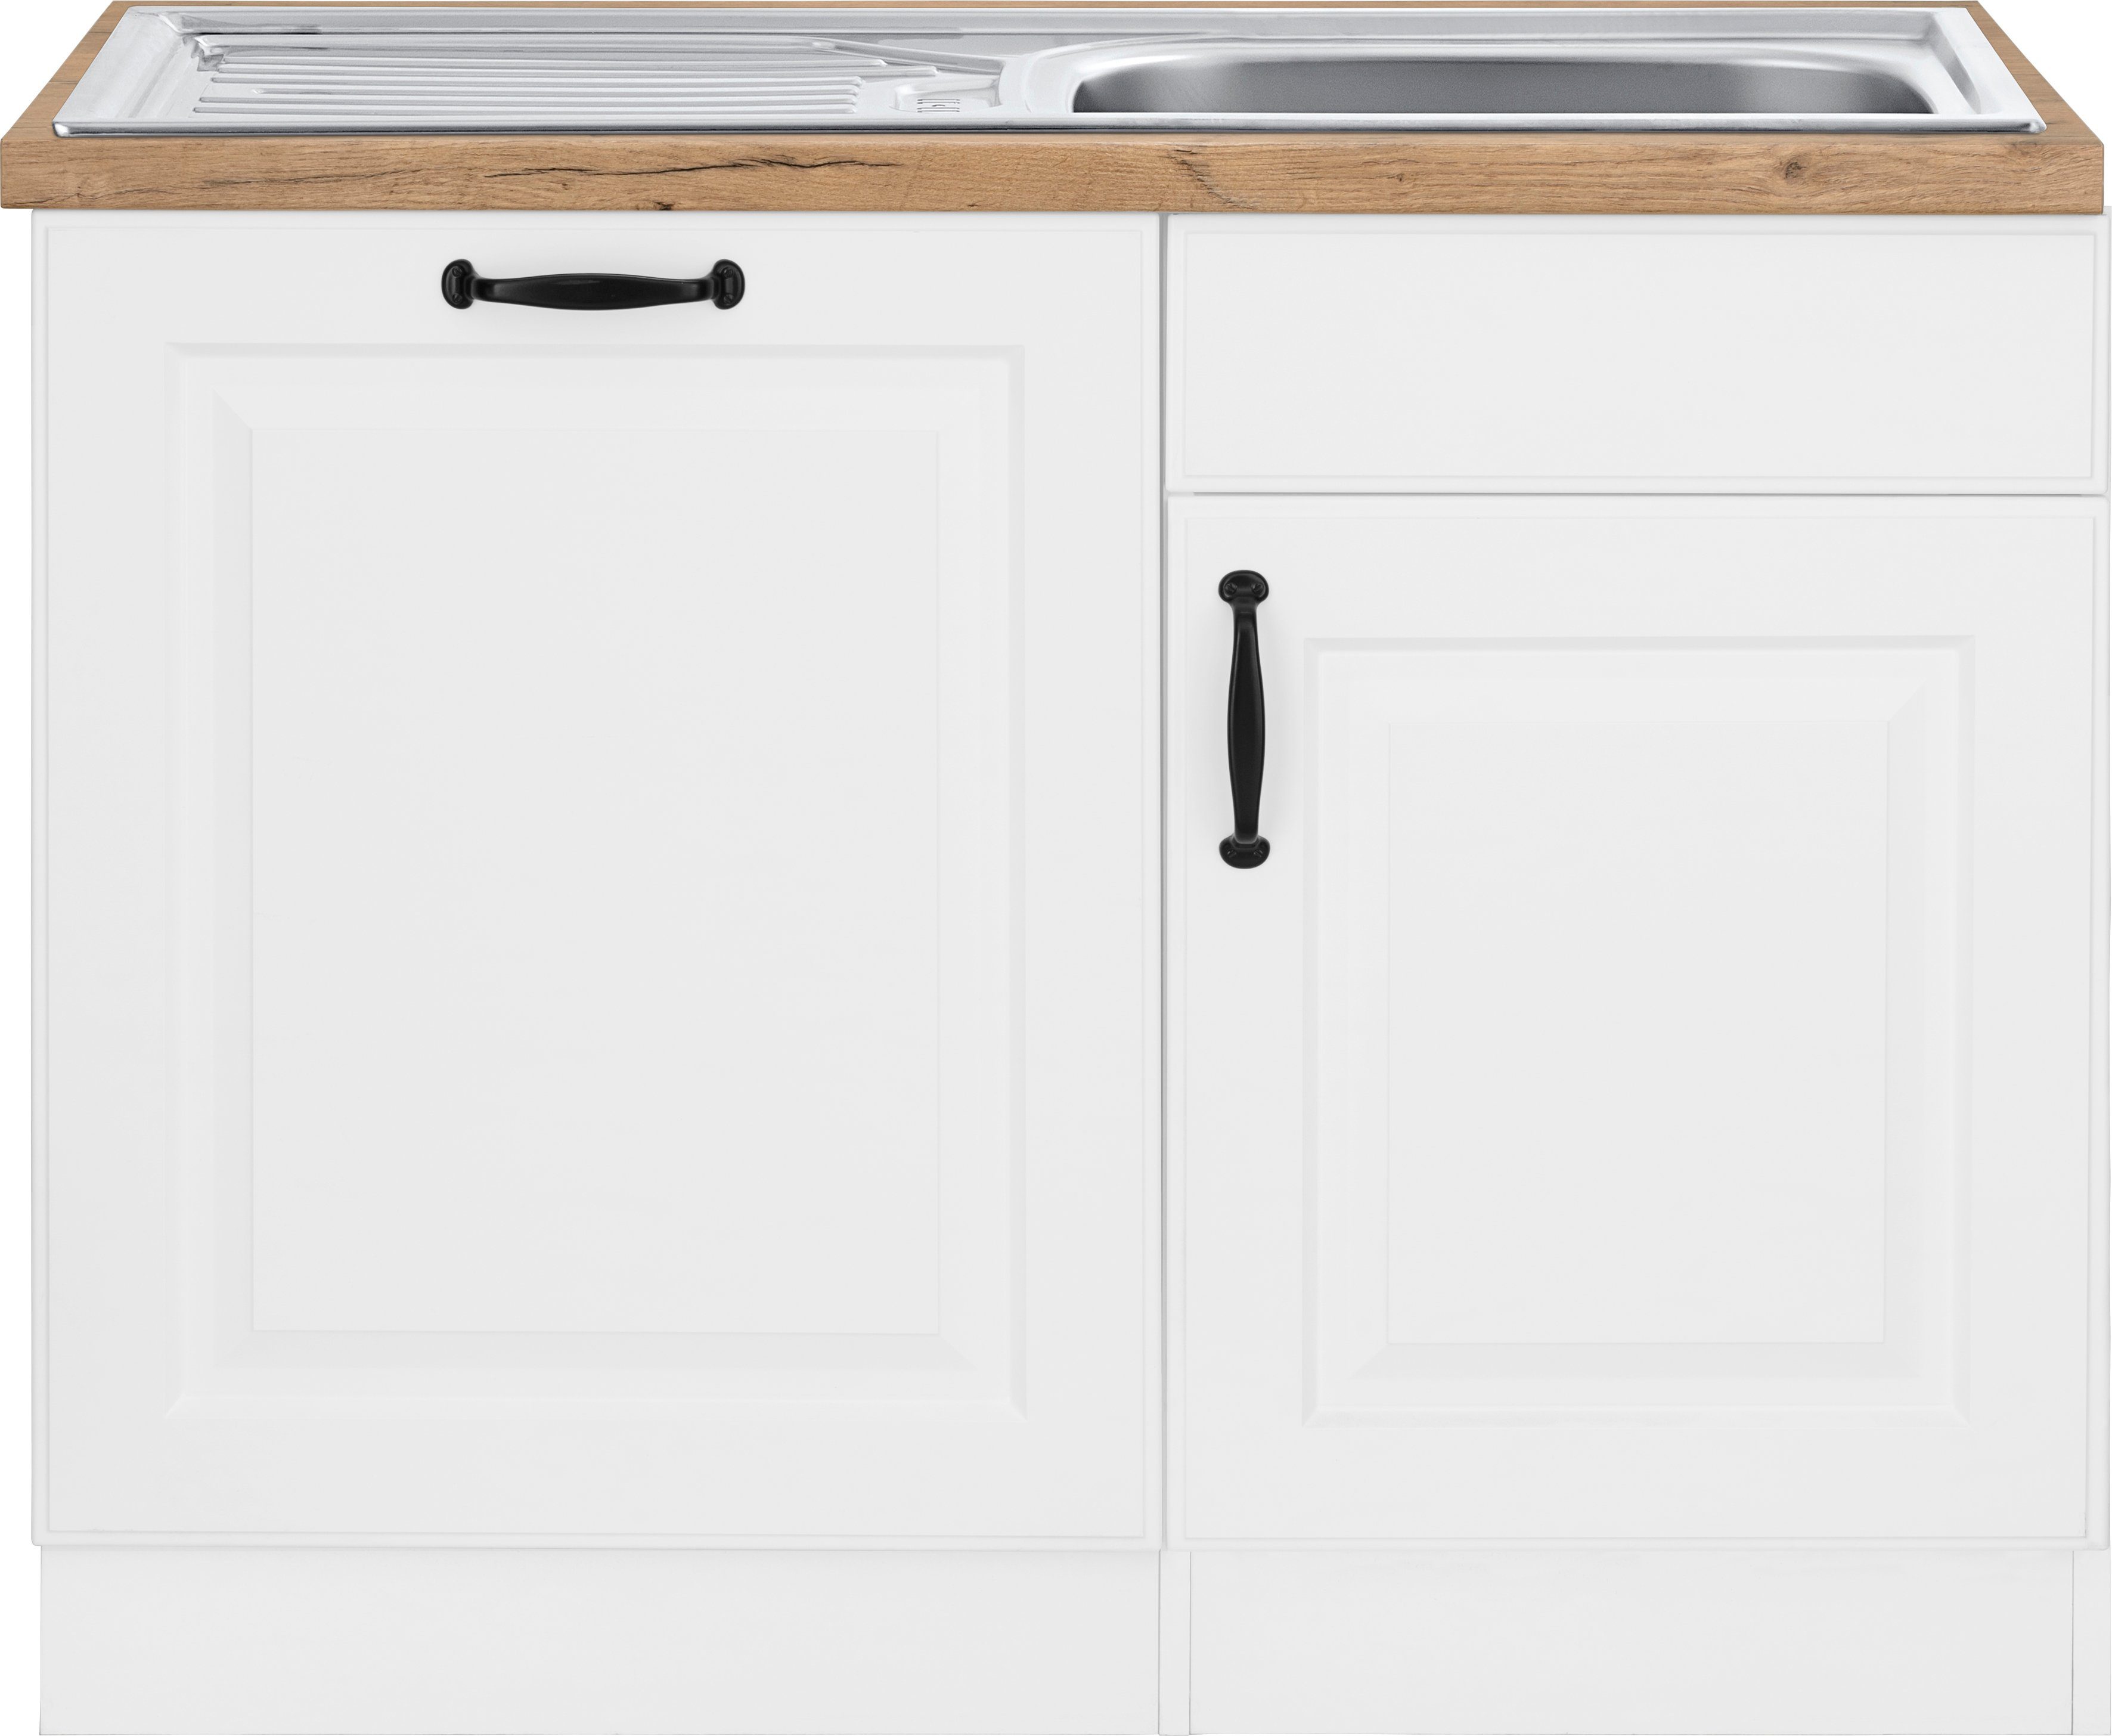 wiho Küchen Spülenschrank Erla 110 cm breit, inkl. Tür/Sockel für  Geschirrspüler | Spülenschränke